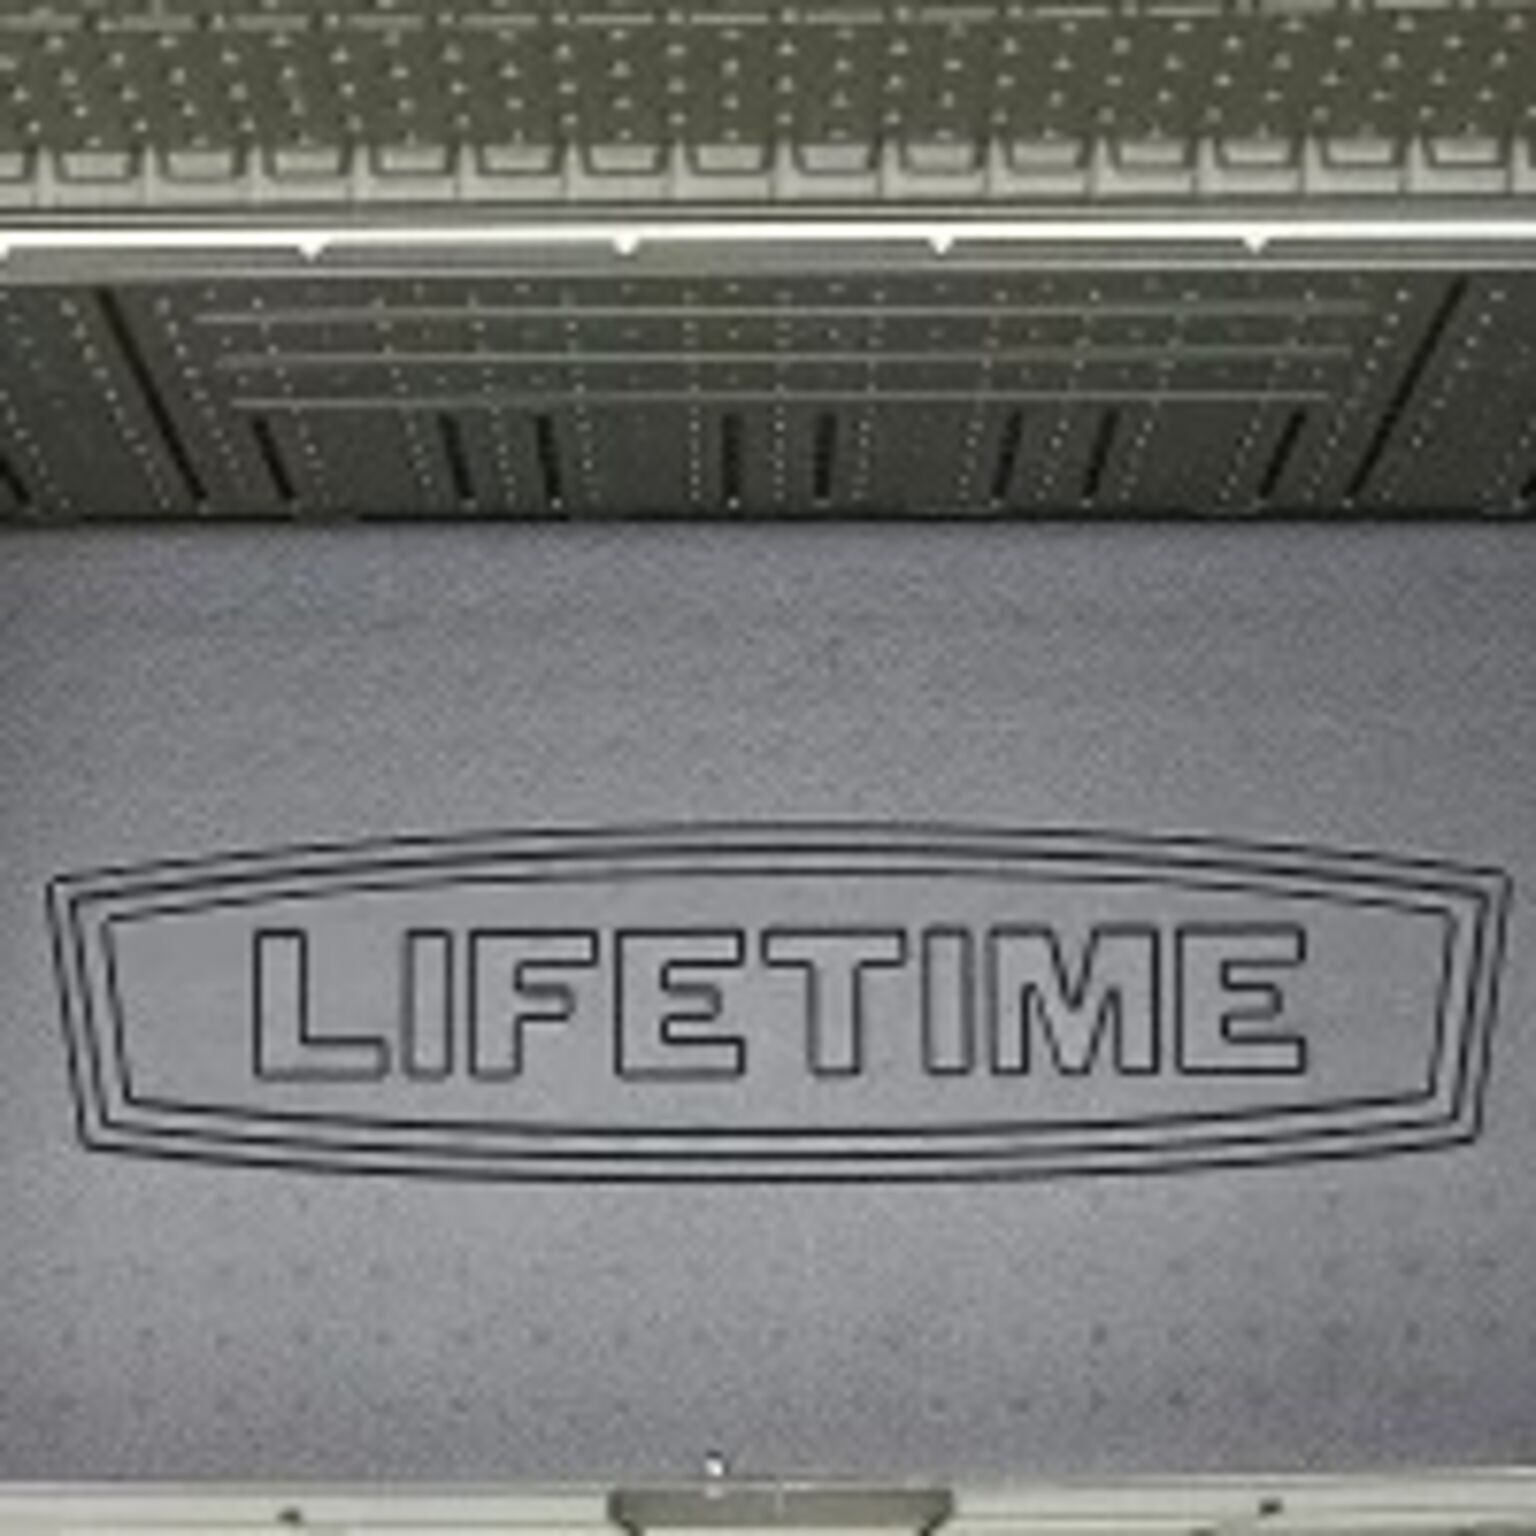 大型567L LIFETIME 150ガロン デッキボックス ベンチタイプ物置 ストレージボックス 屋外用収納ベンチ 物置き 通販  家具とインテリアの通販【RoomClipショッピング】